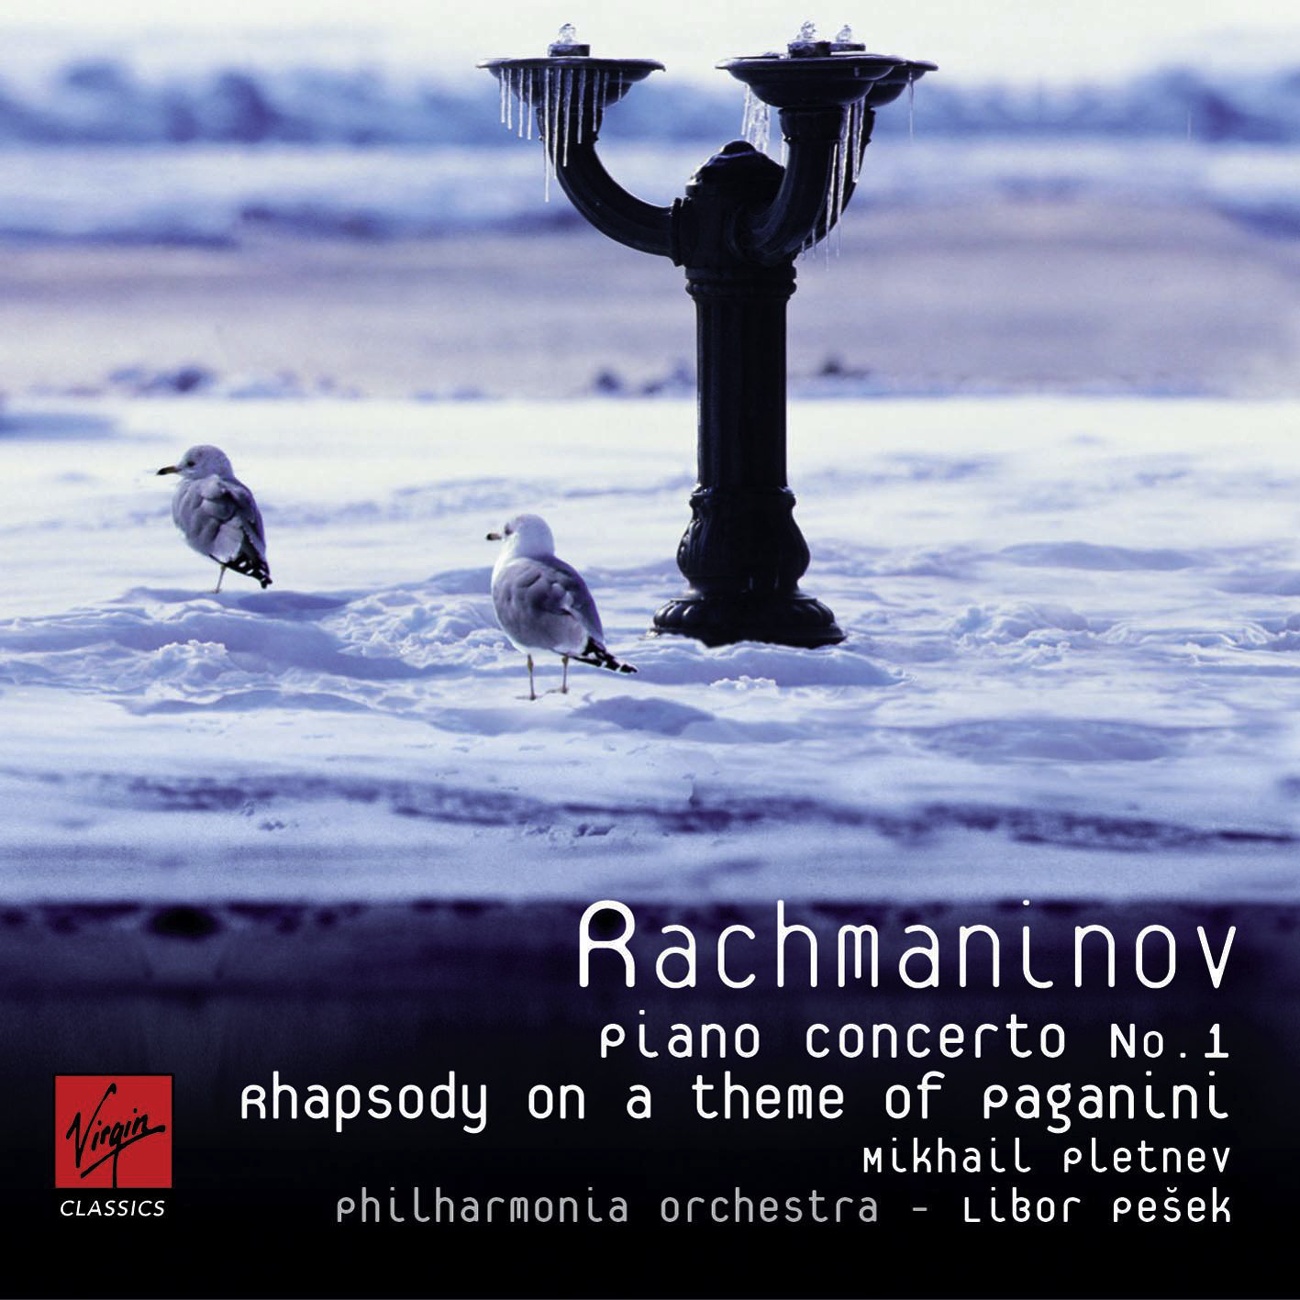 Rhapsody on a Theme of Paganini: Variation VII - Meno mosso, a tempo moderato